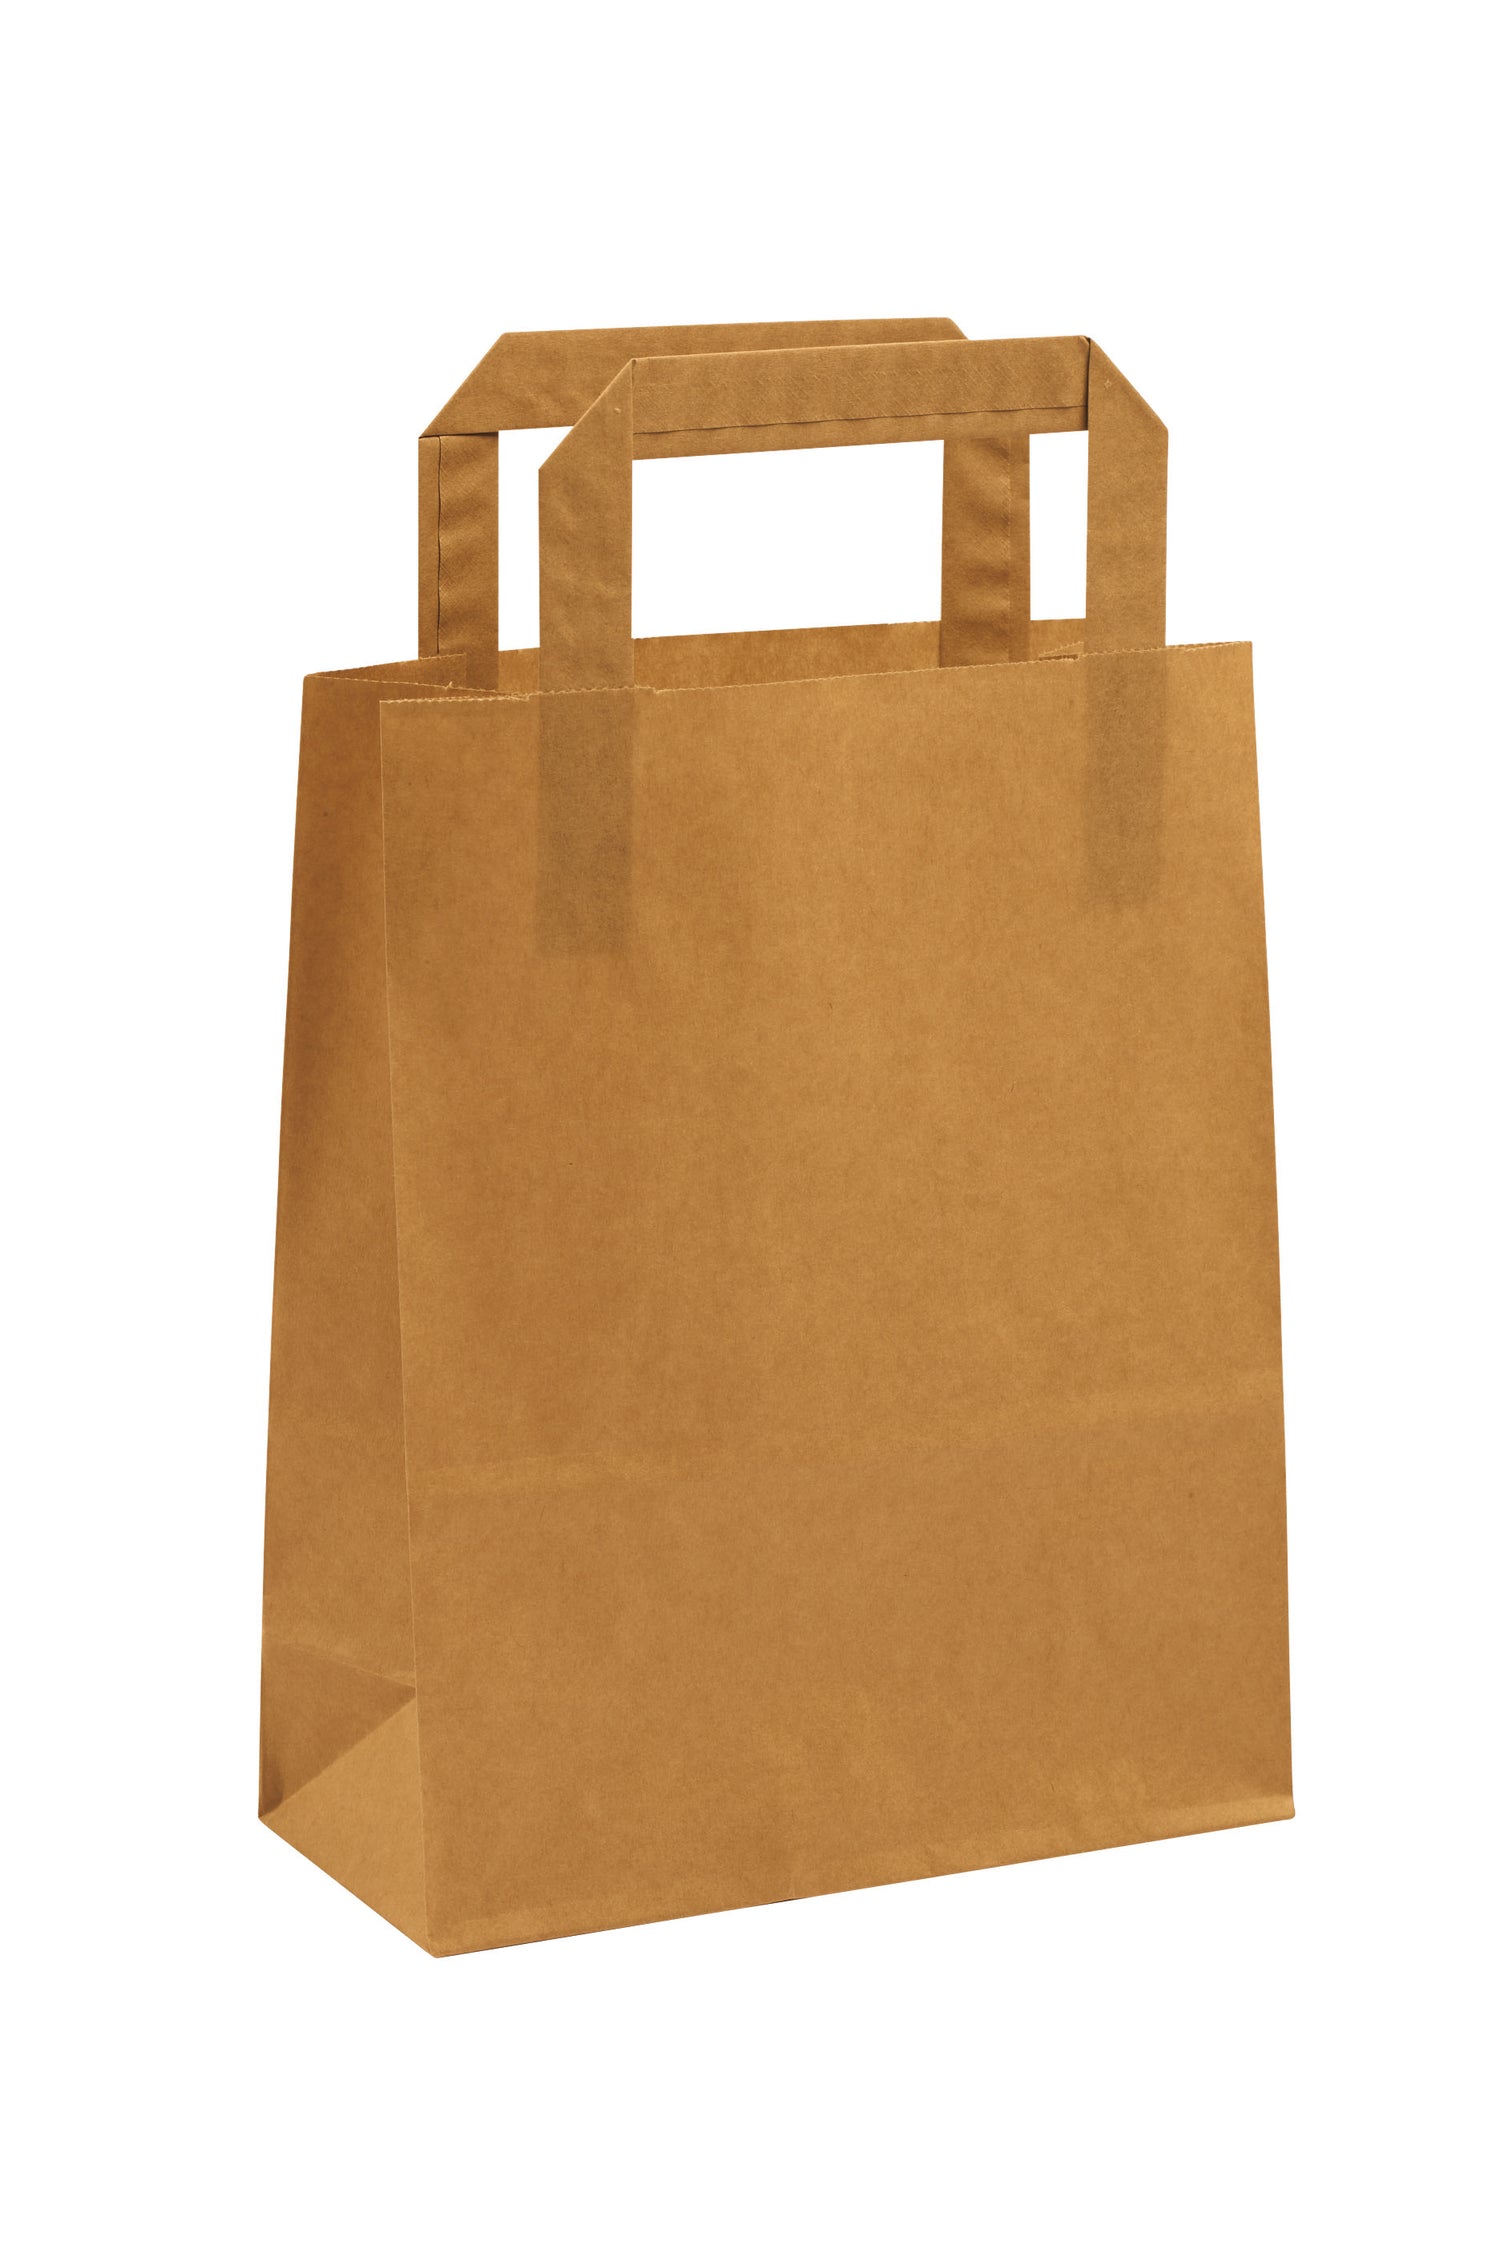 Printed Brown Kraft Takeaway Bags (4 SIZES)